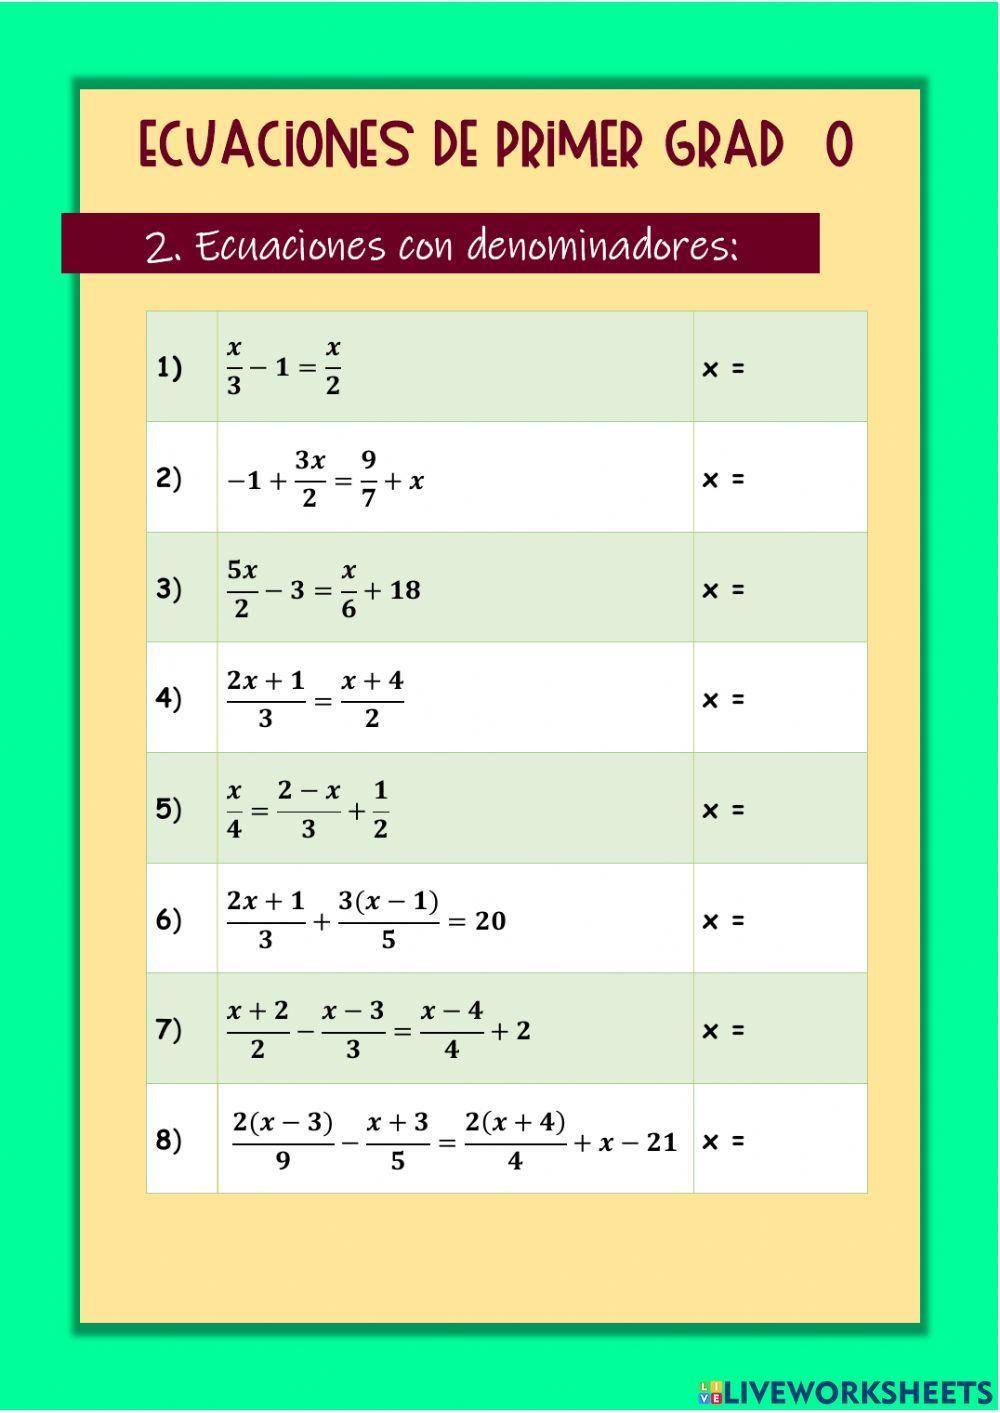 Ecuaciones de primer grado con denominadores